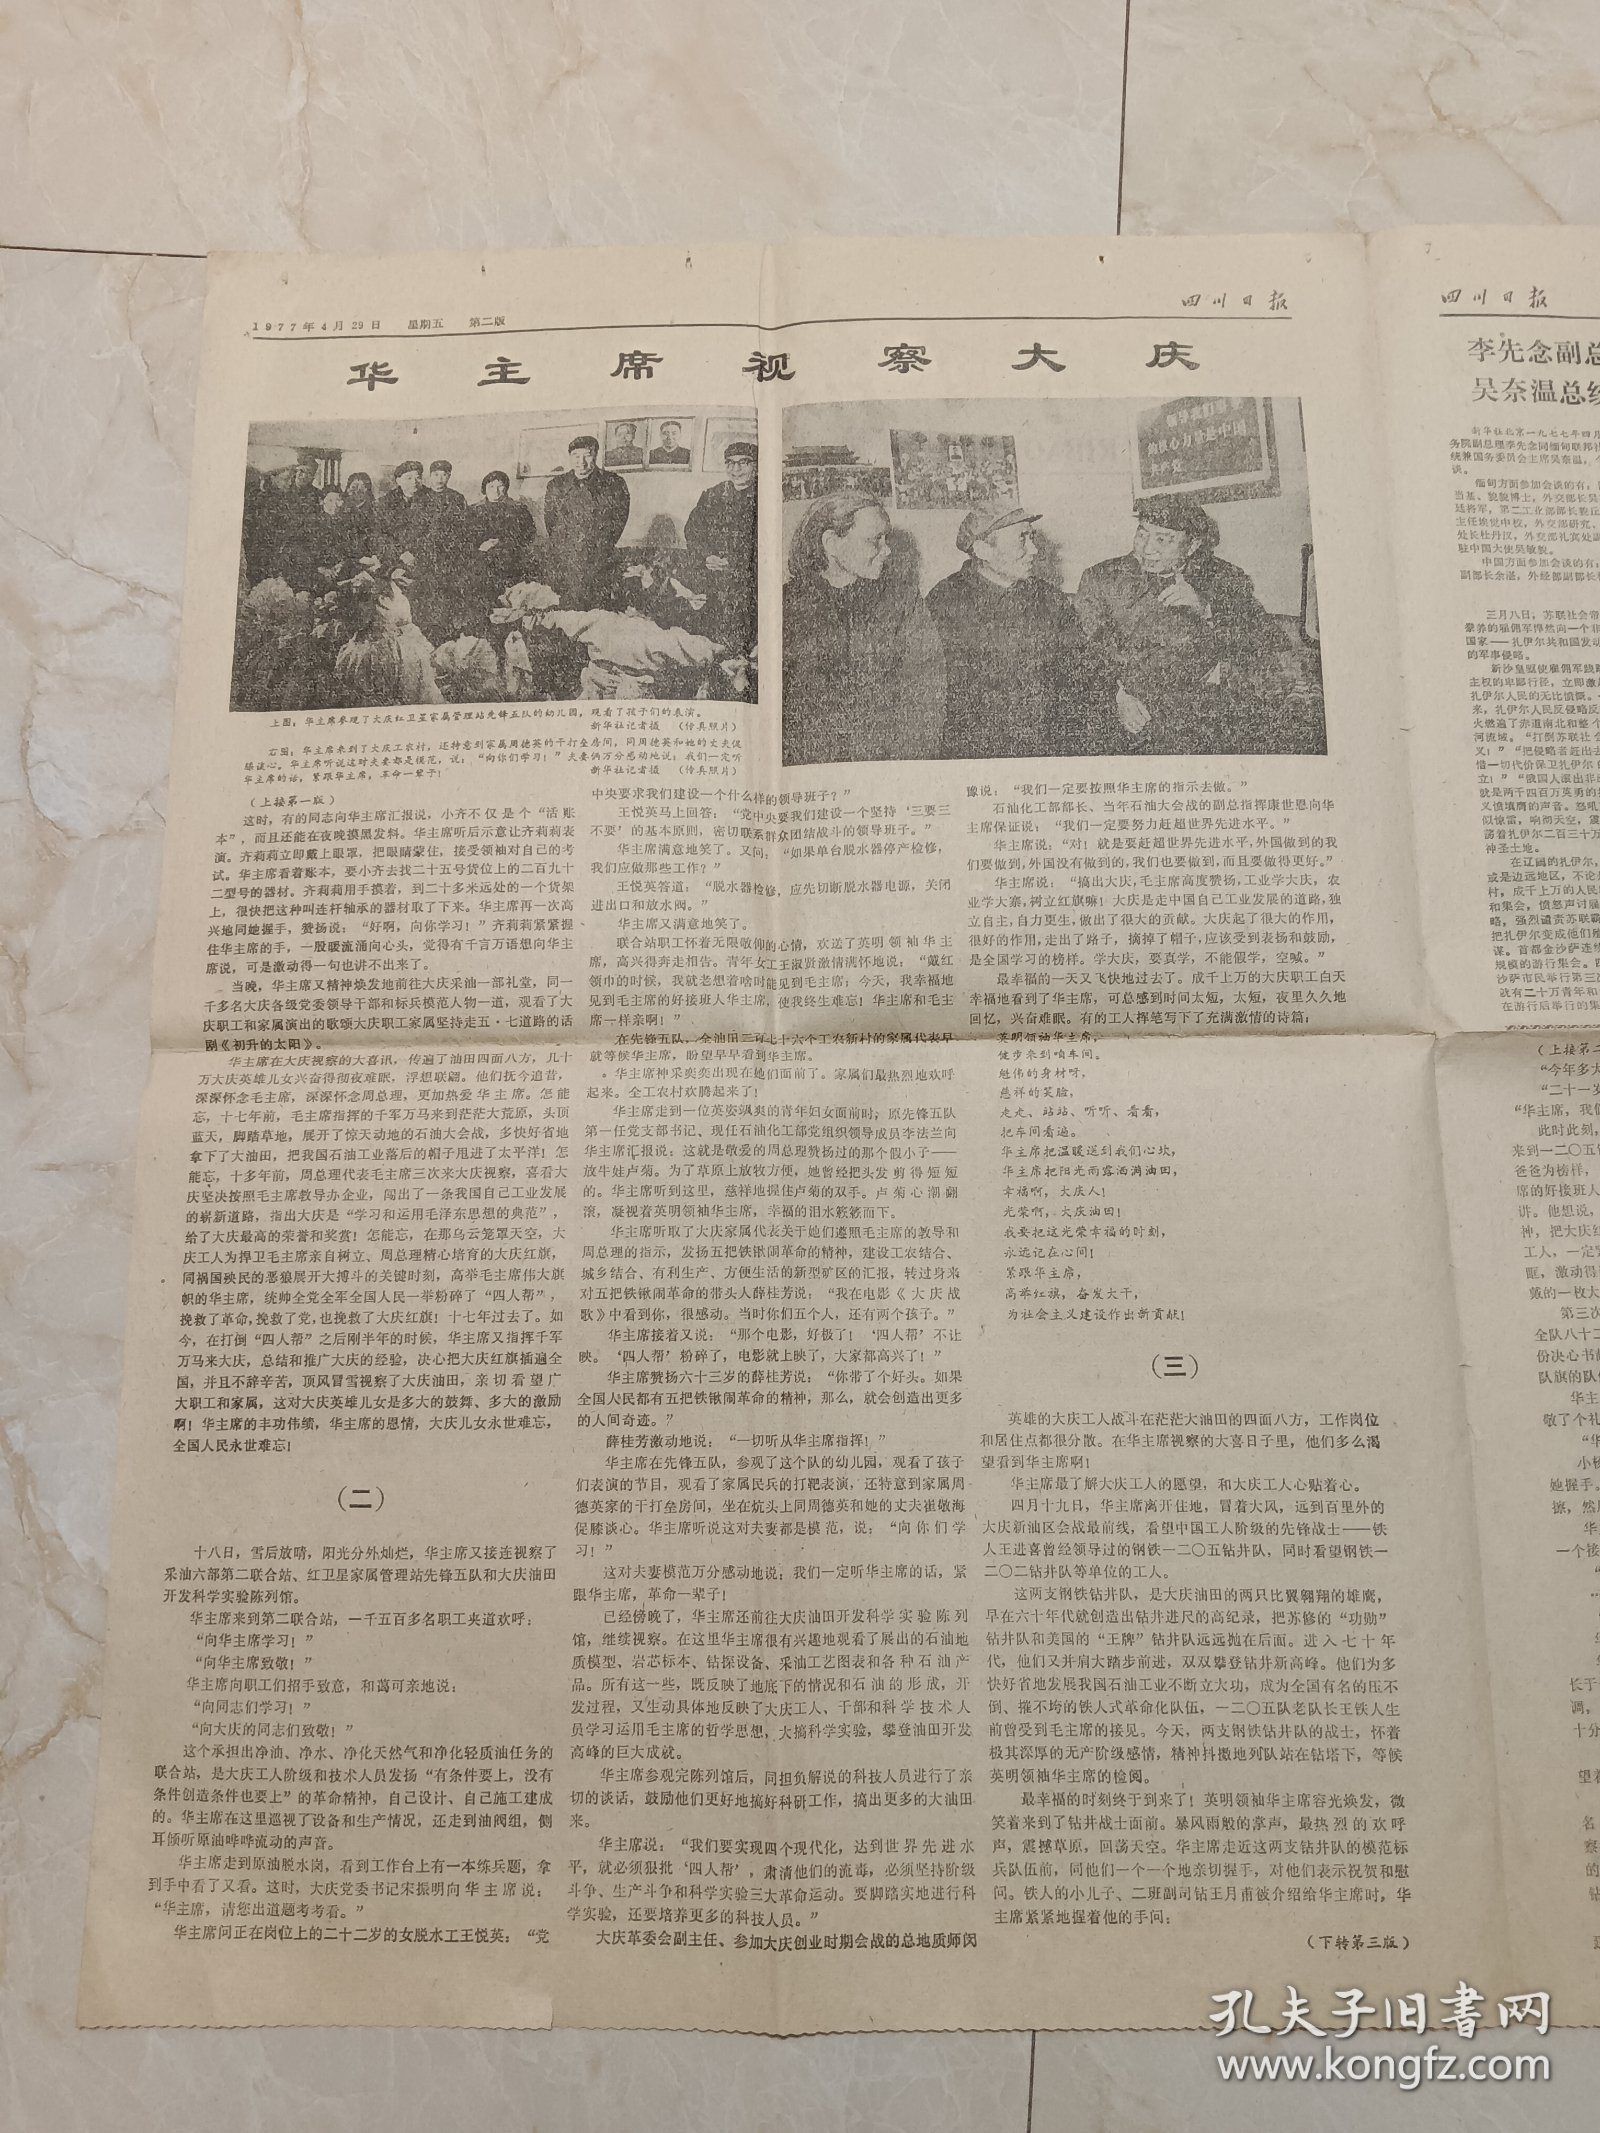 四川日报1977年4月29日。华主席视察大庆。